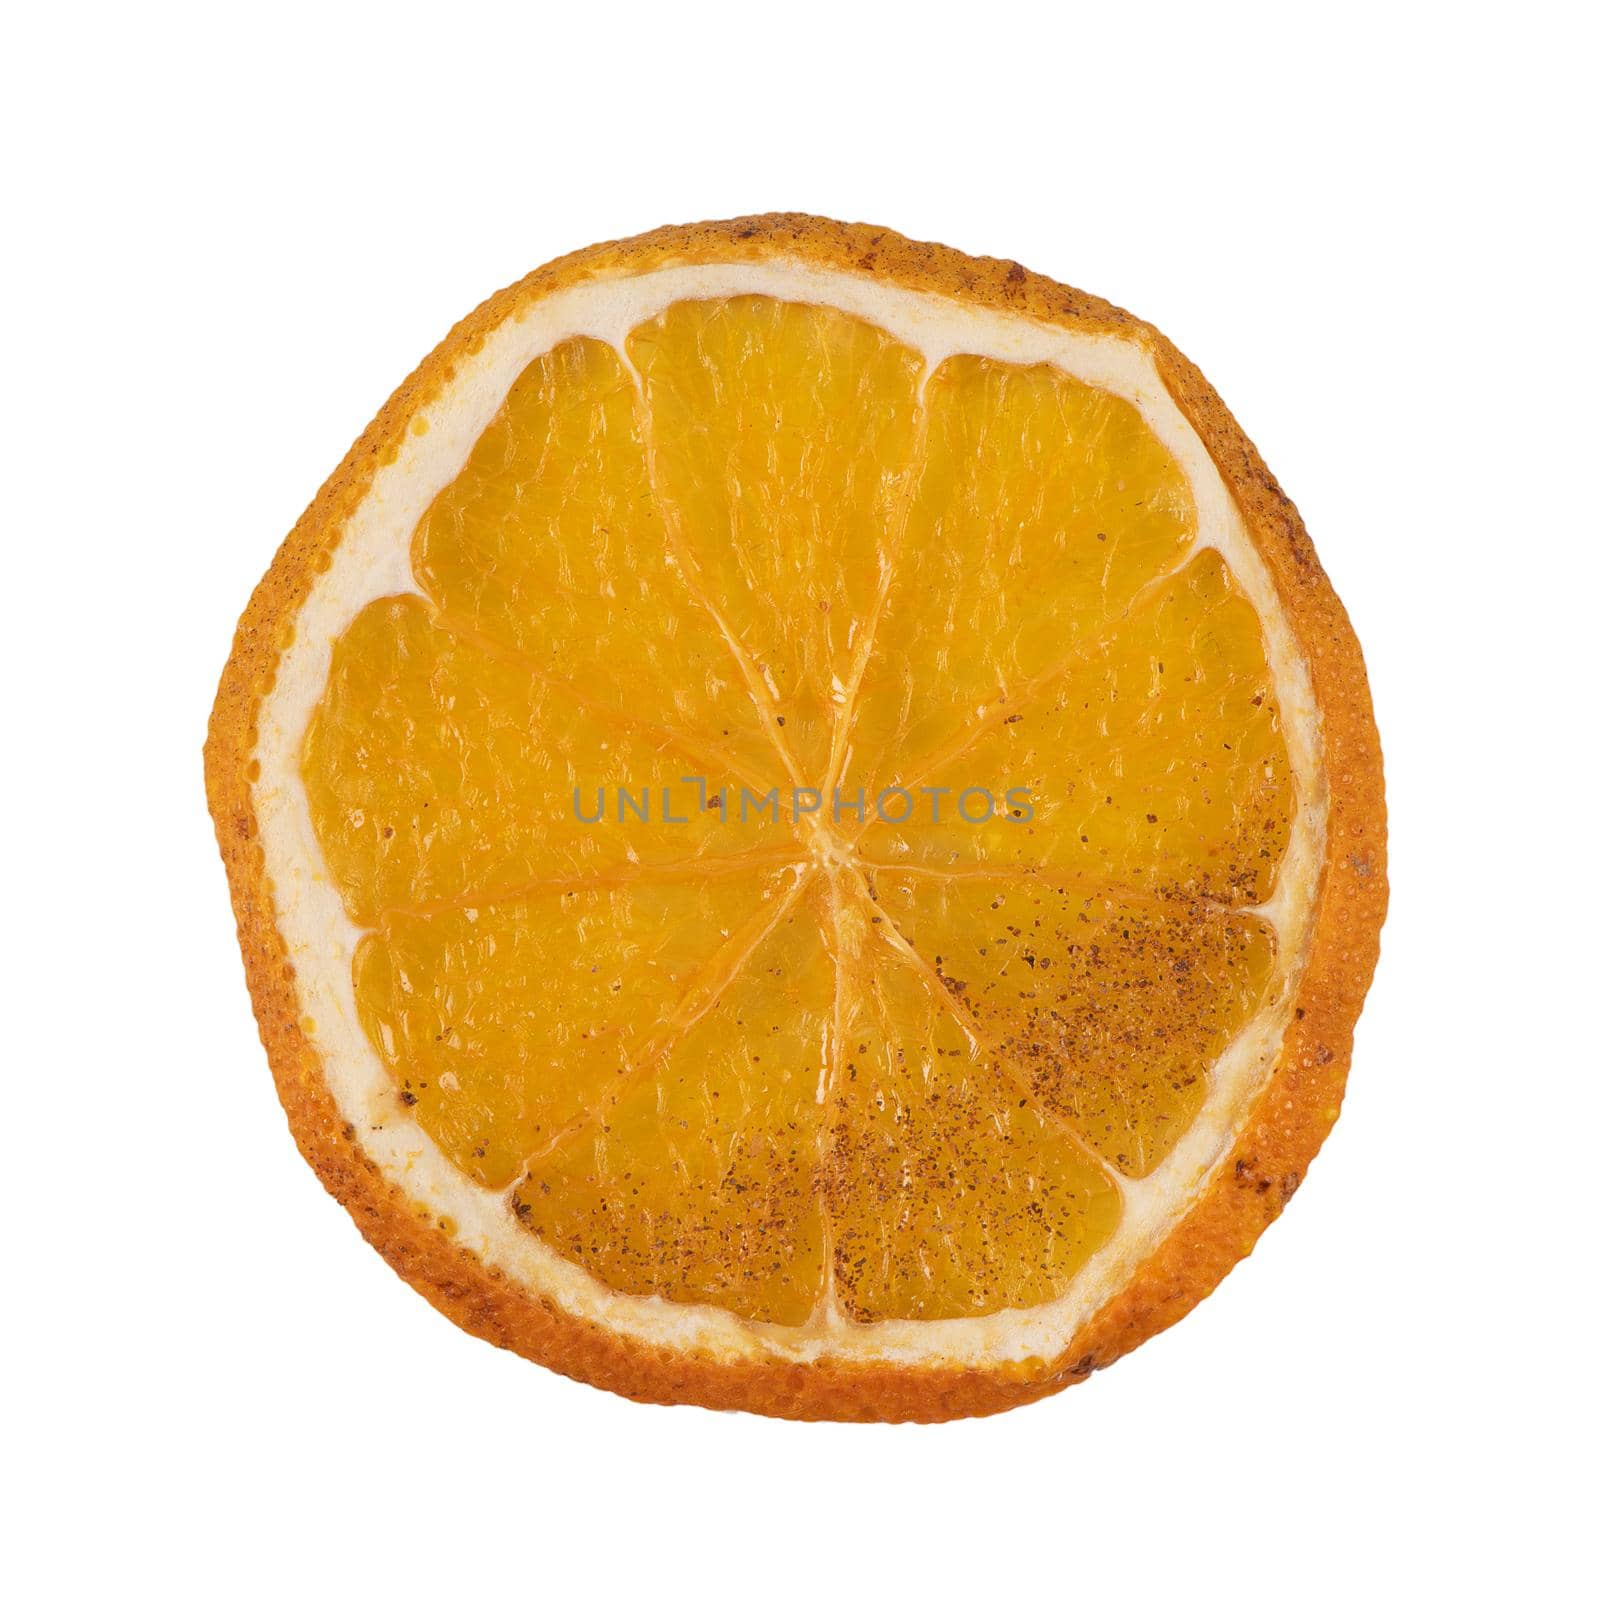 Dried slice of orange isolated on white background.